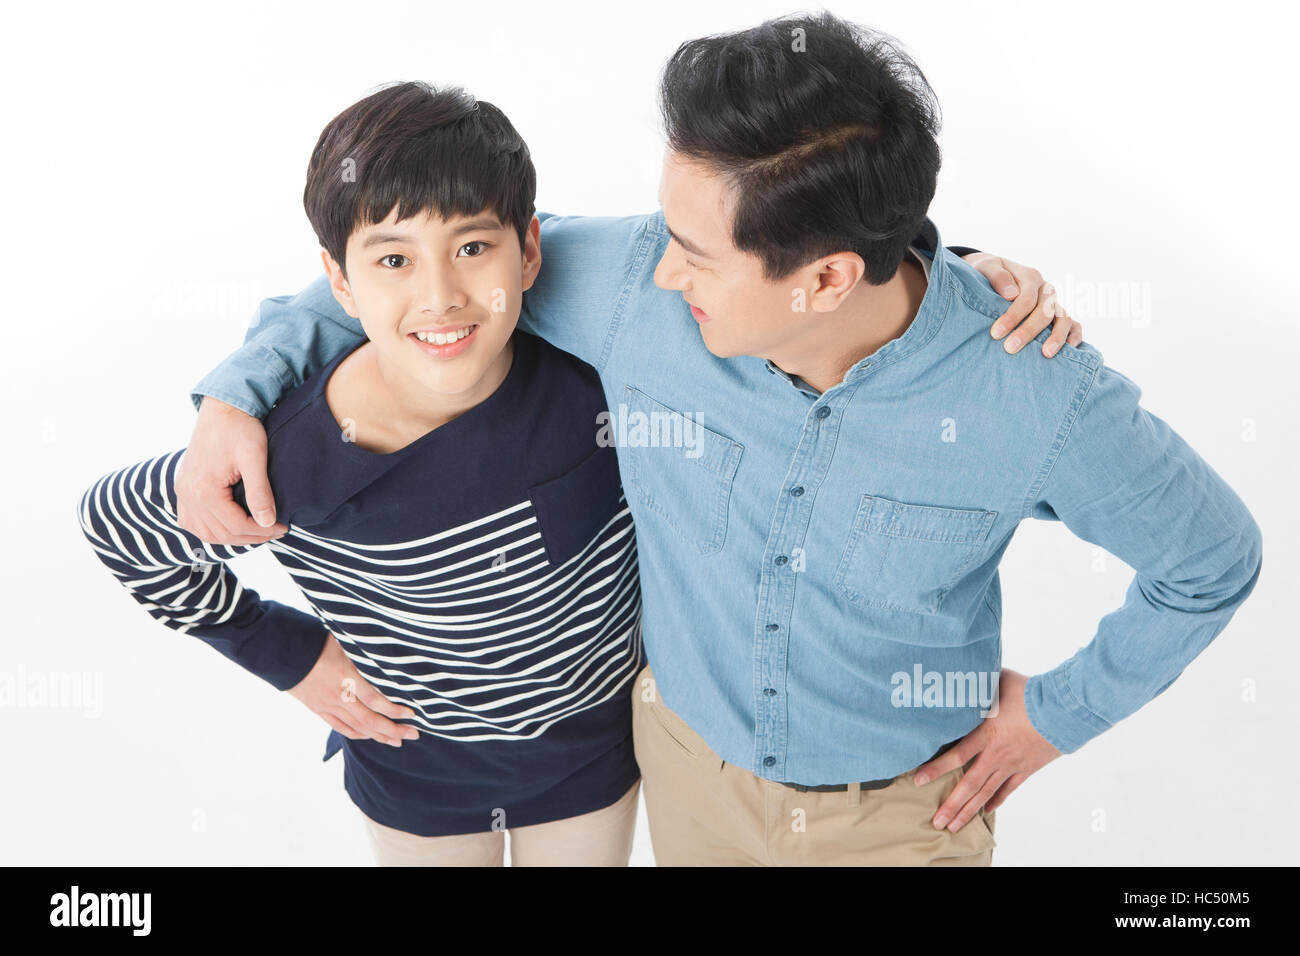 High angle view of smiling middle aged père et fils adolescent mettant les mains sur les épaules de l'autre Banque D'Images